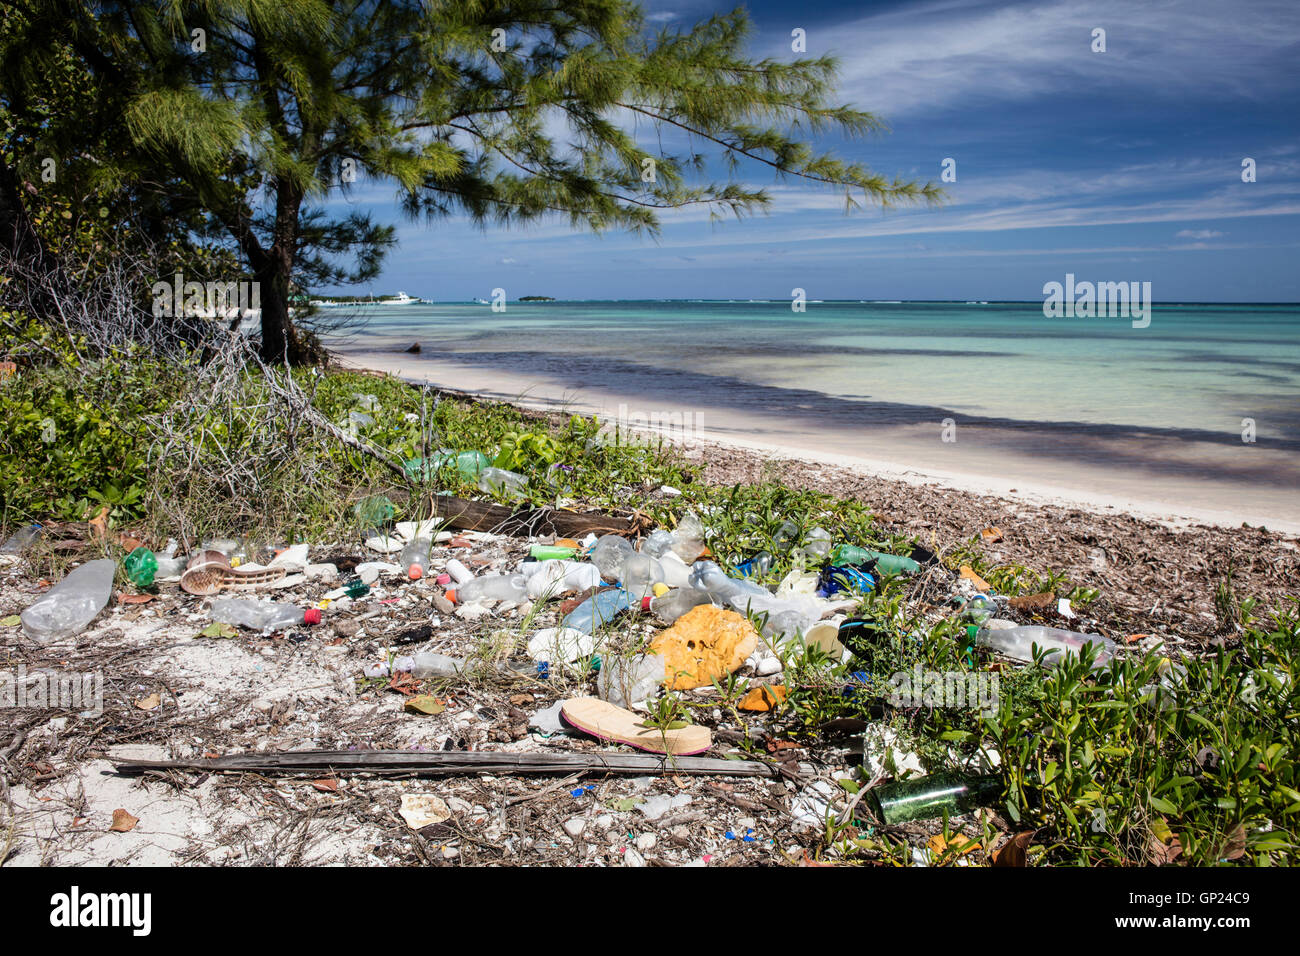 Les déchets plastiques rejetés au rivage, Turneffe Atoll, des Caraïbes, le Belize Banque D'Images